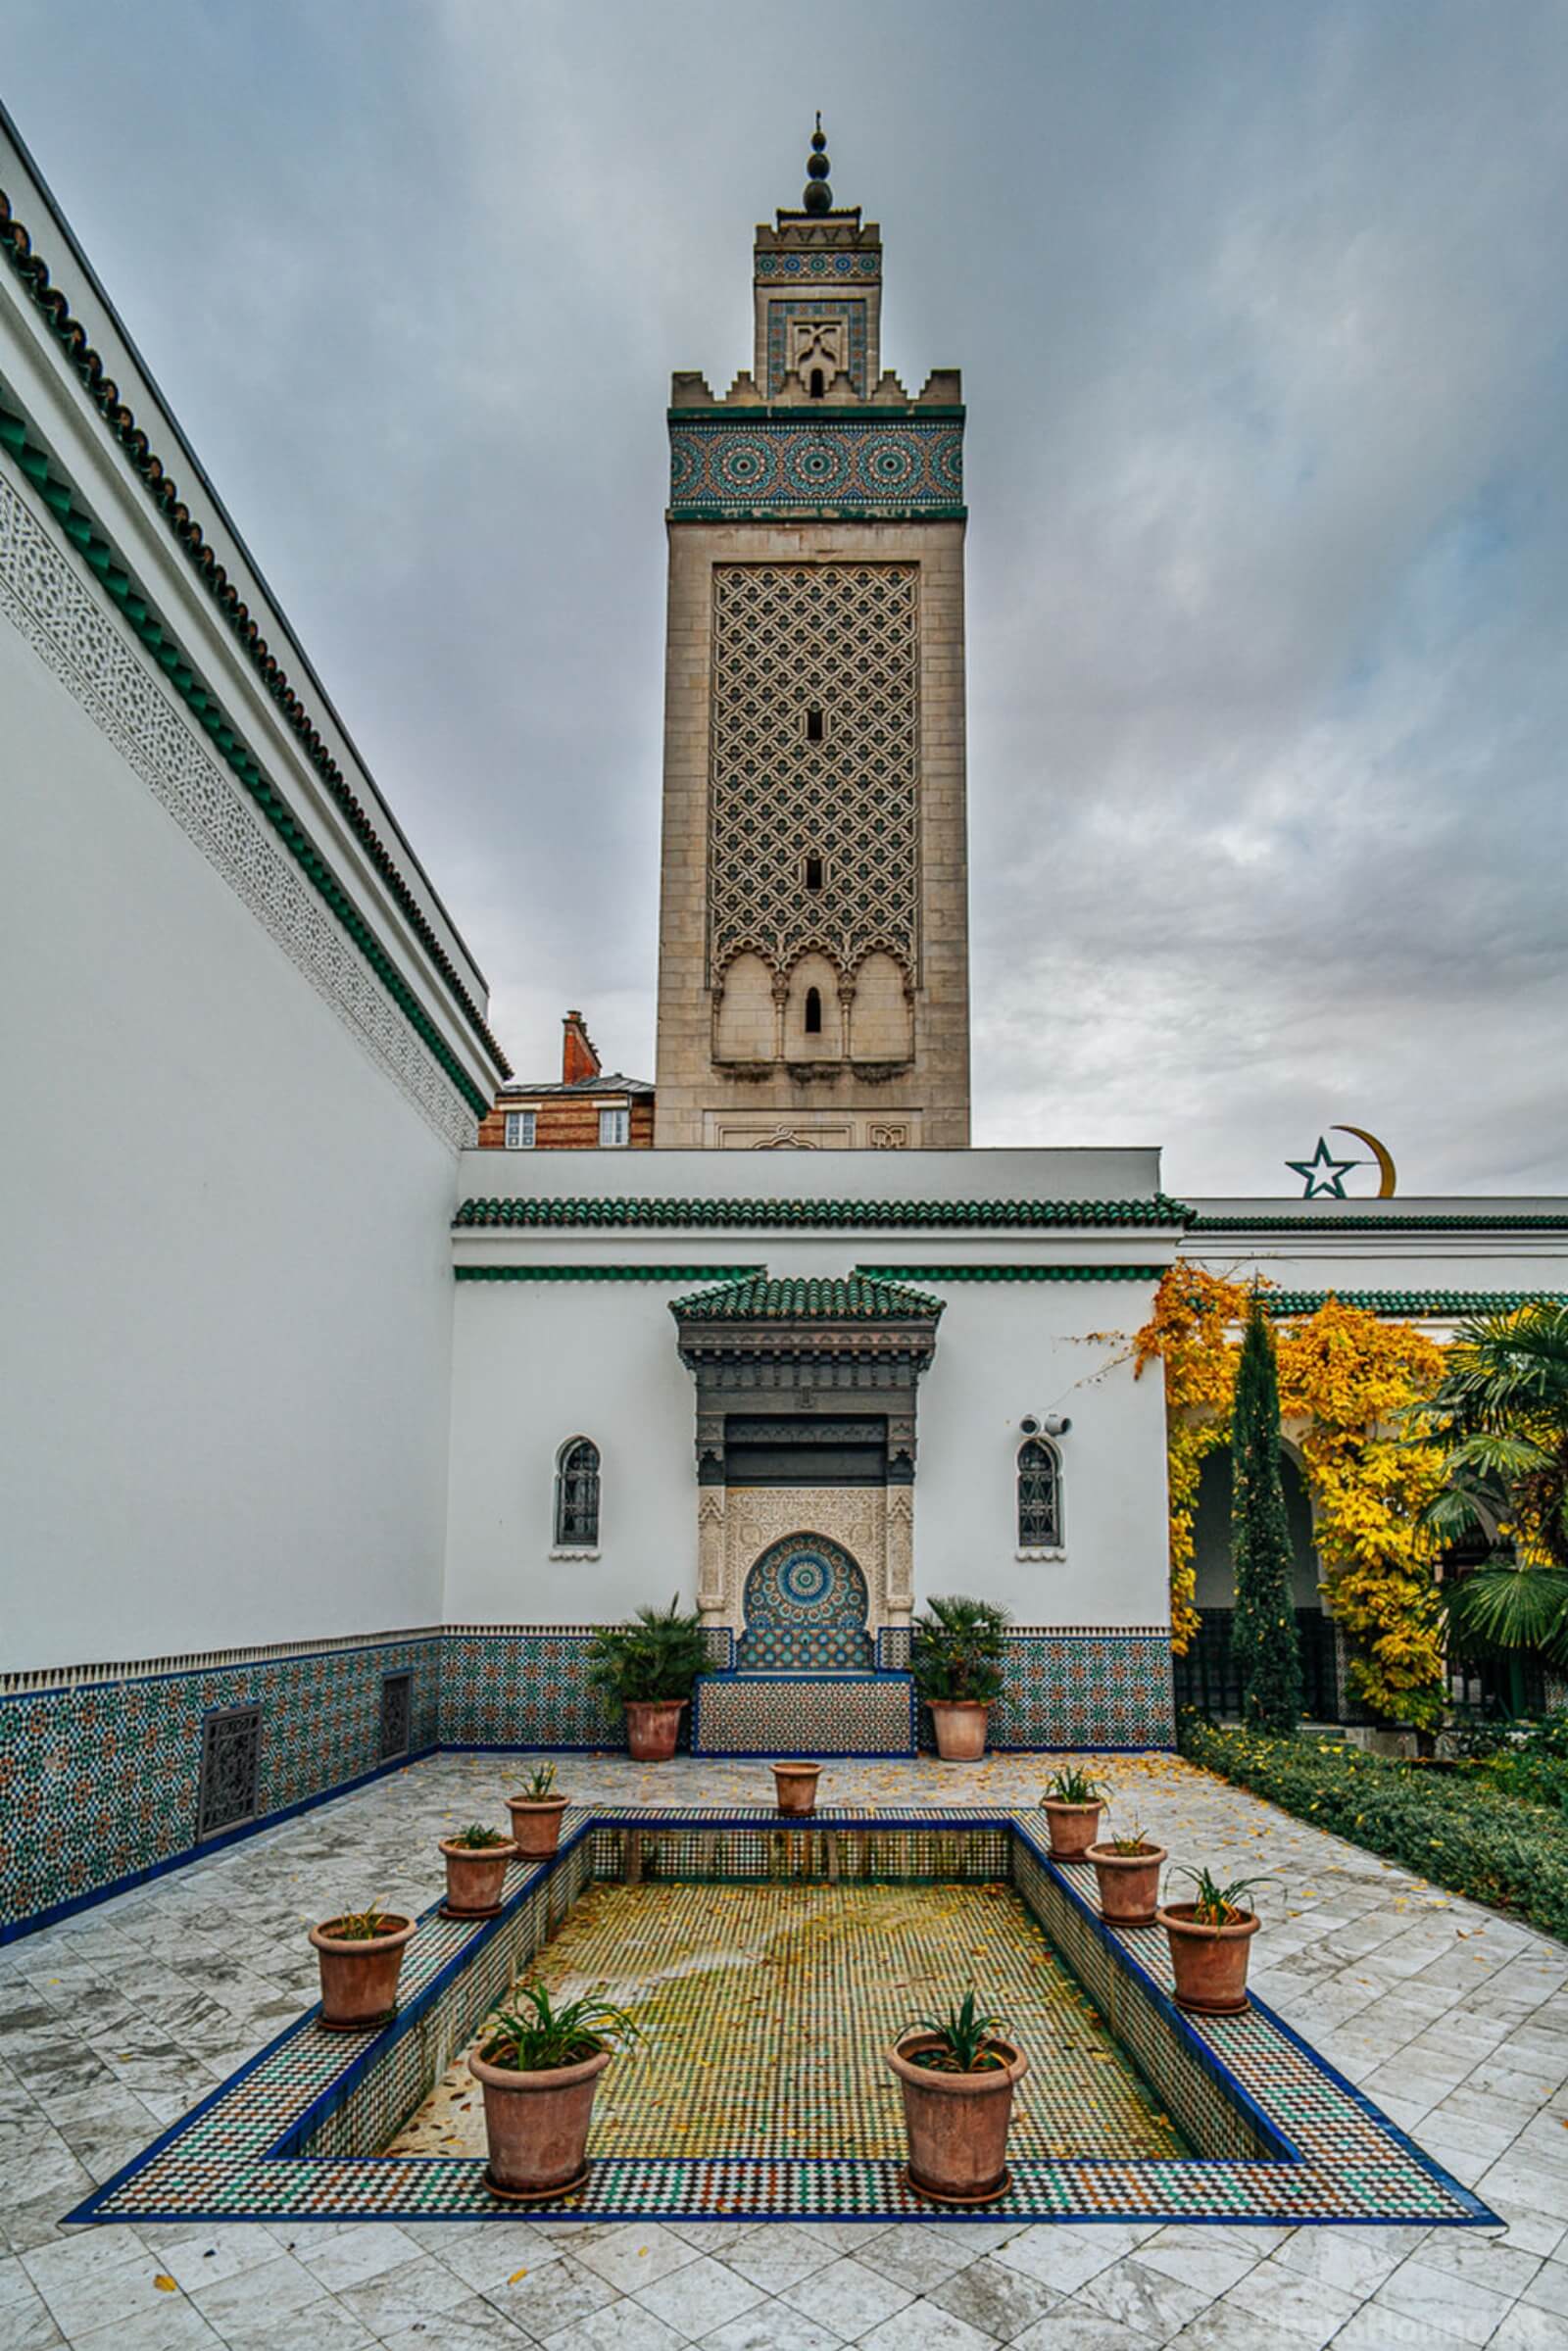 Image of Grande Mosquée de Paris by James Billings.